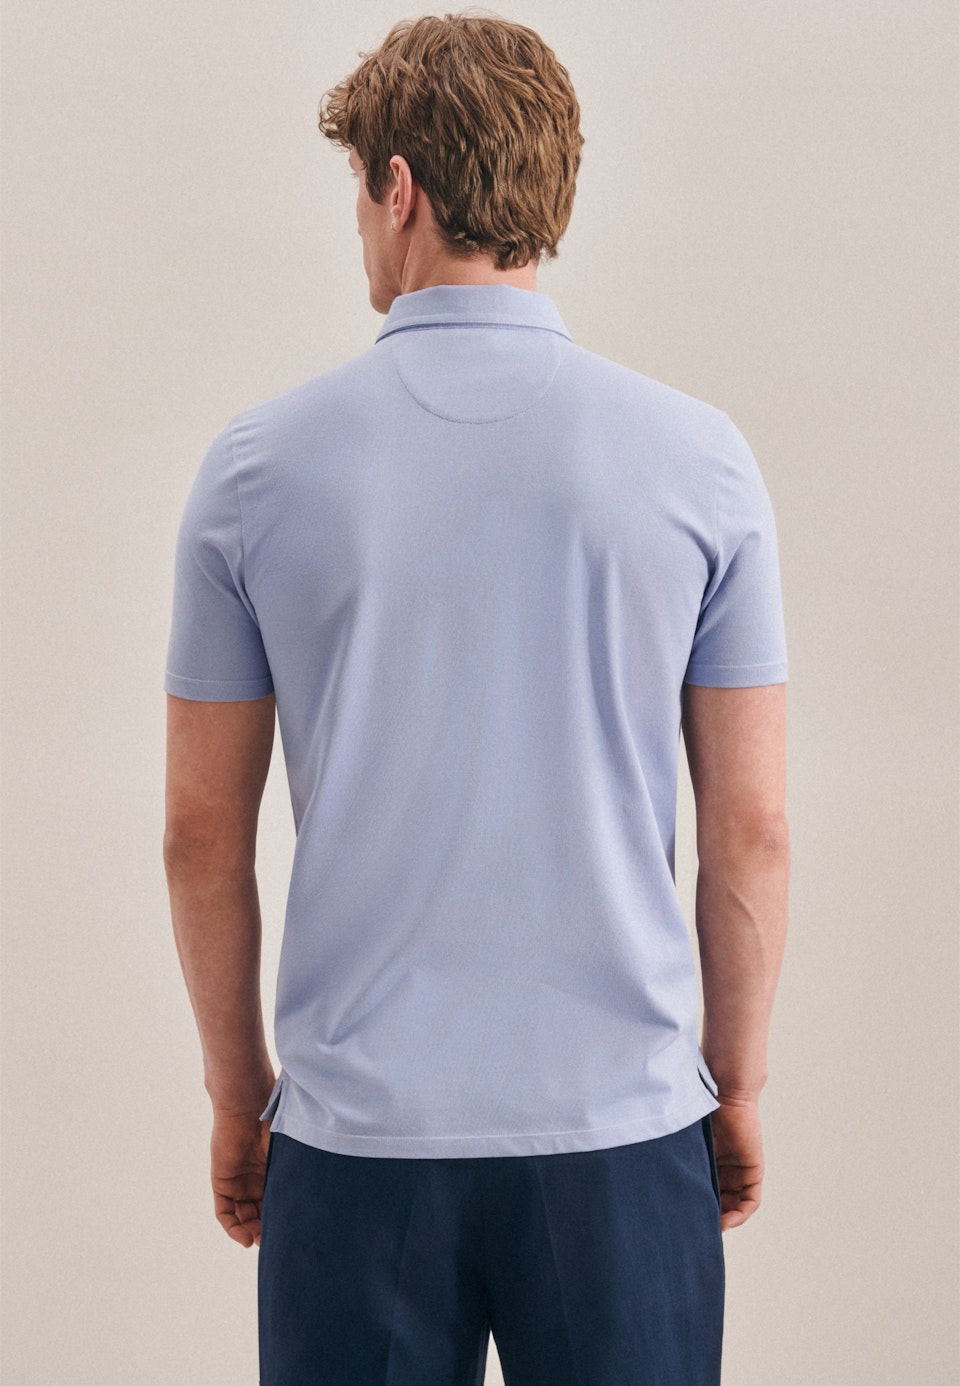 Kragen Polo-Shirt Tailliert (Slim-Fit) in Hellblau |  Seidensticker Onlineshop